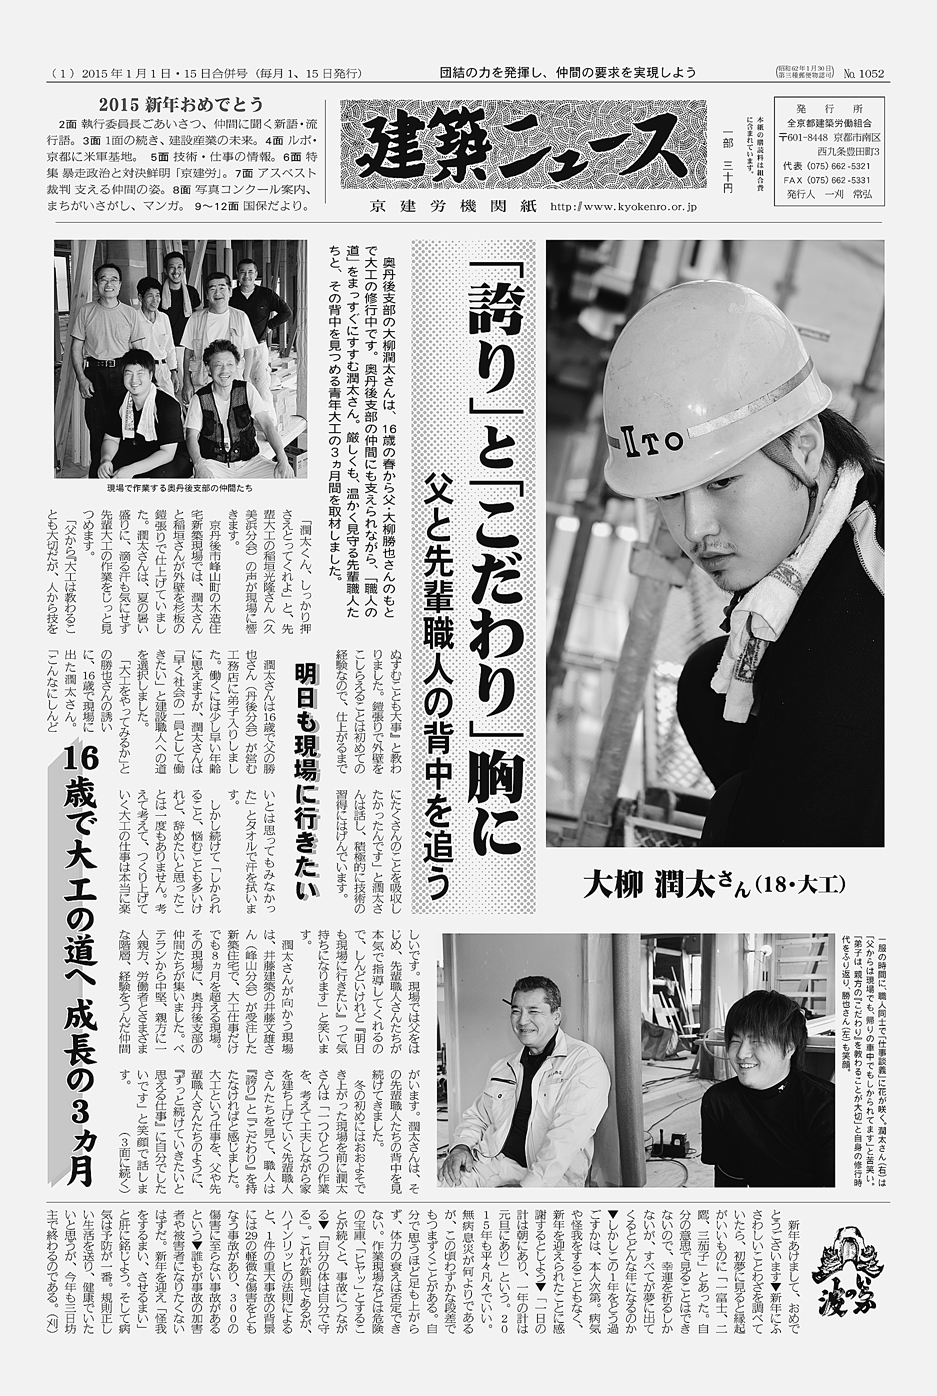 http://www.kyokenro.or.jp/news/1052-1men.jpg